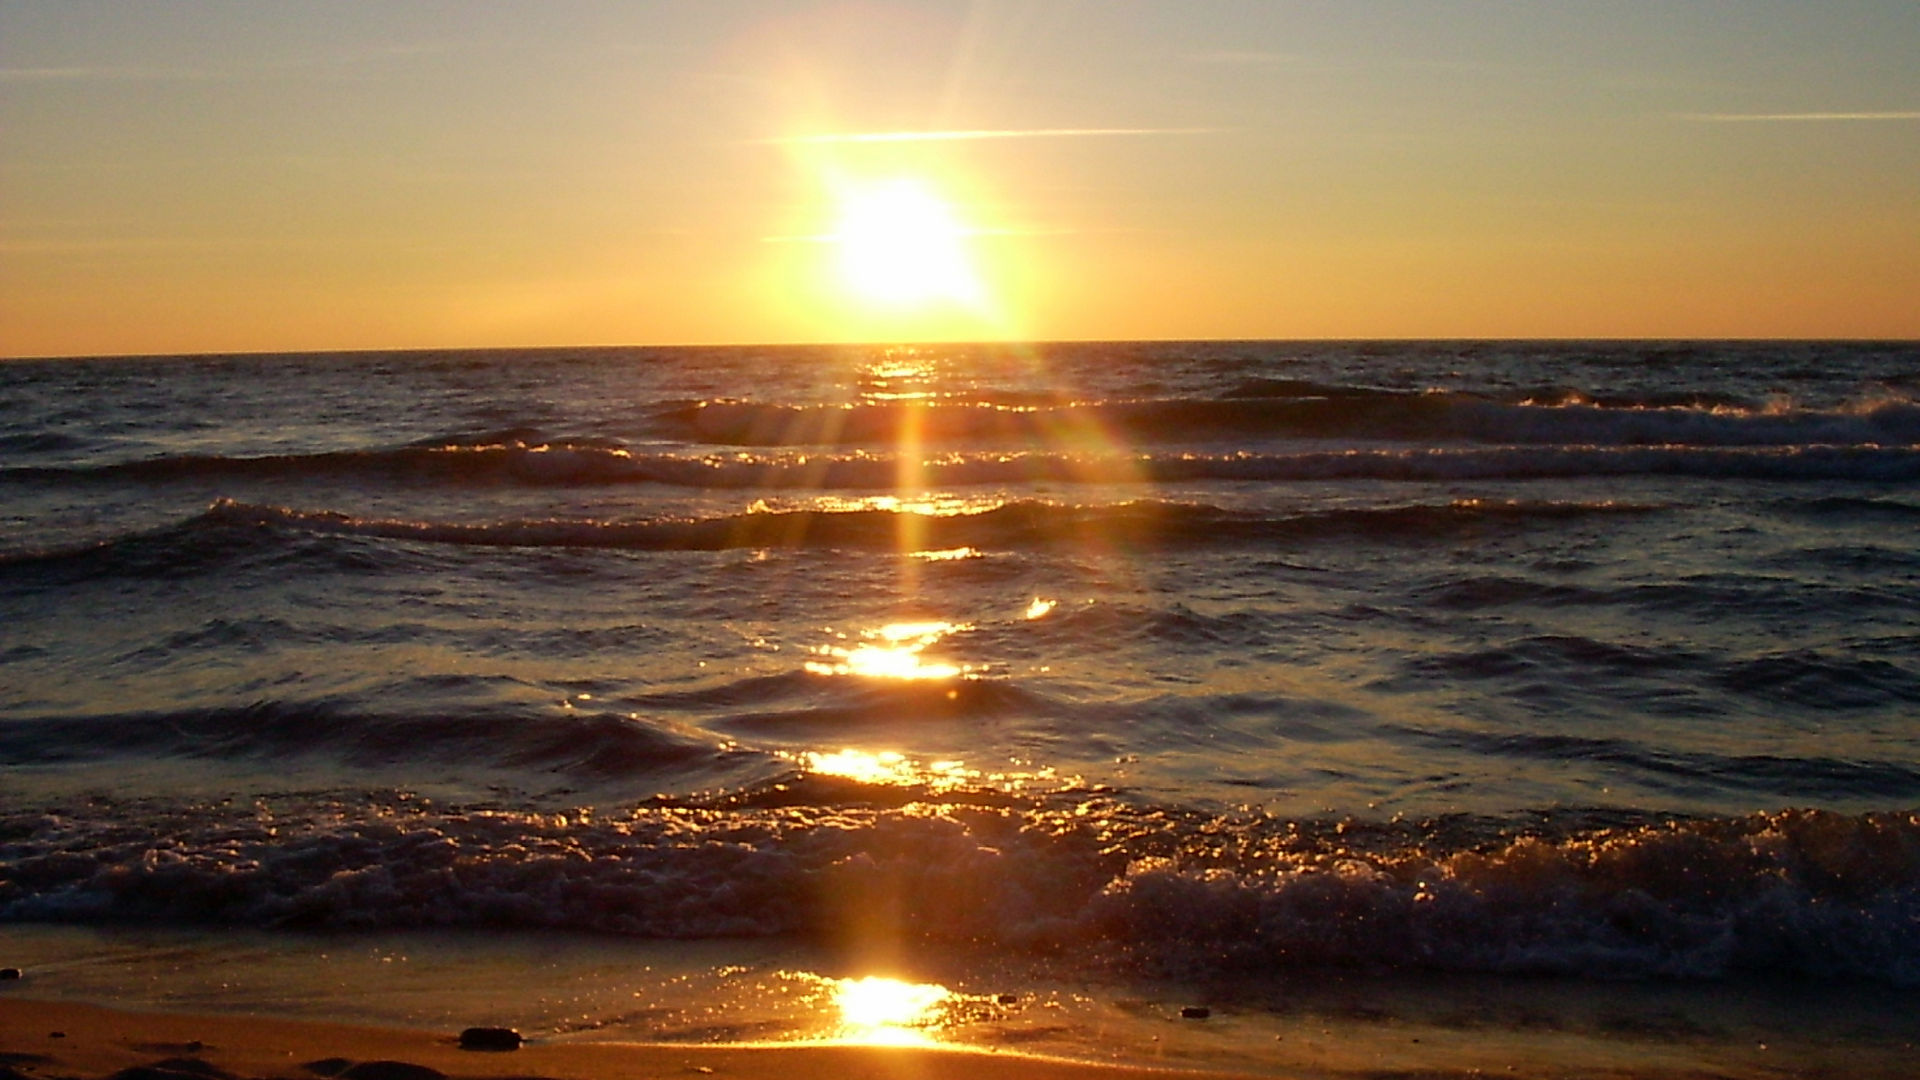 Bałtyk - widok zachodzącego słońca